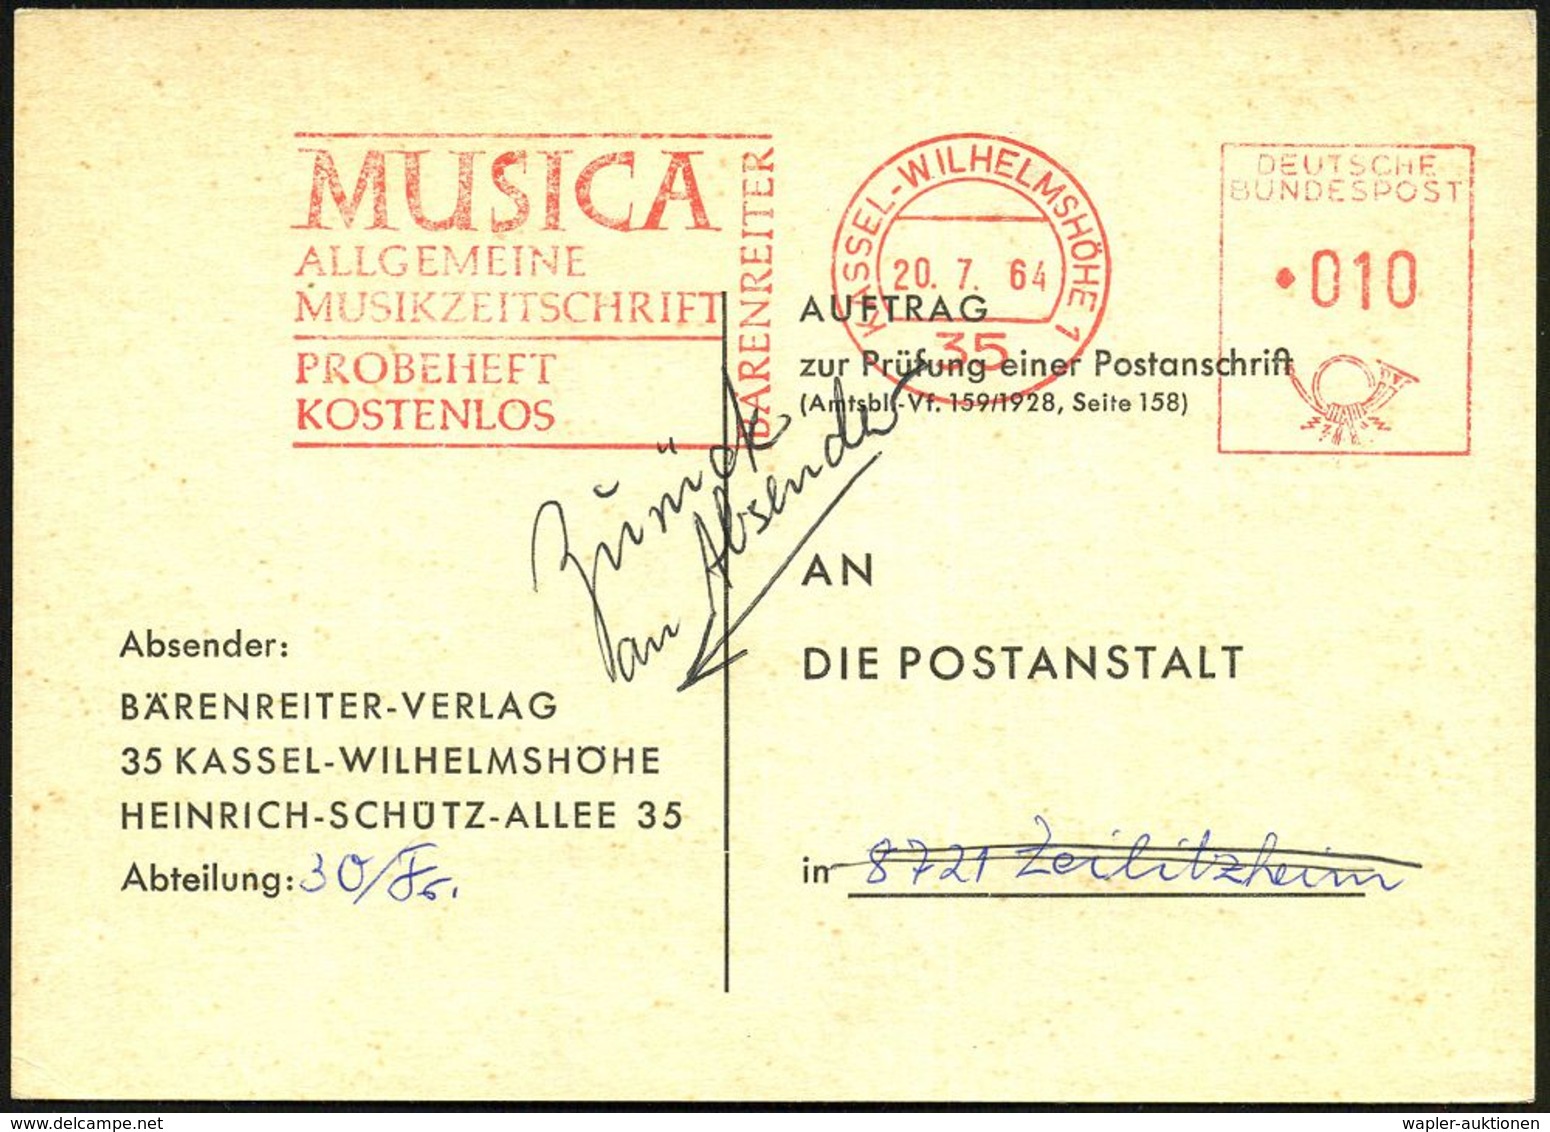 35 KASSEL-WILHELMSHÖHE/ MUSICA/ ALLG./ MUSIKZEITSCHRIFT/ BÄRENREITER.. 1964 (20.7.) AFS 010 Pf. , Firmen-Retour-Kt.: AUF - Musica